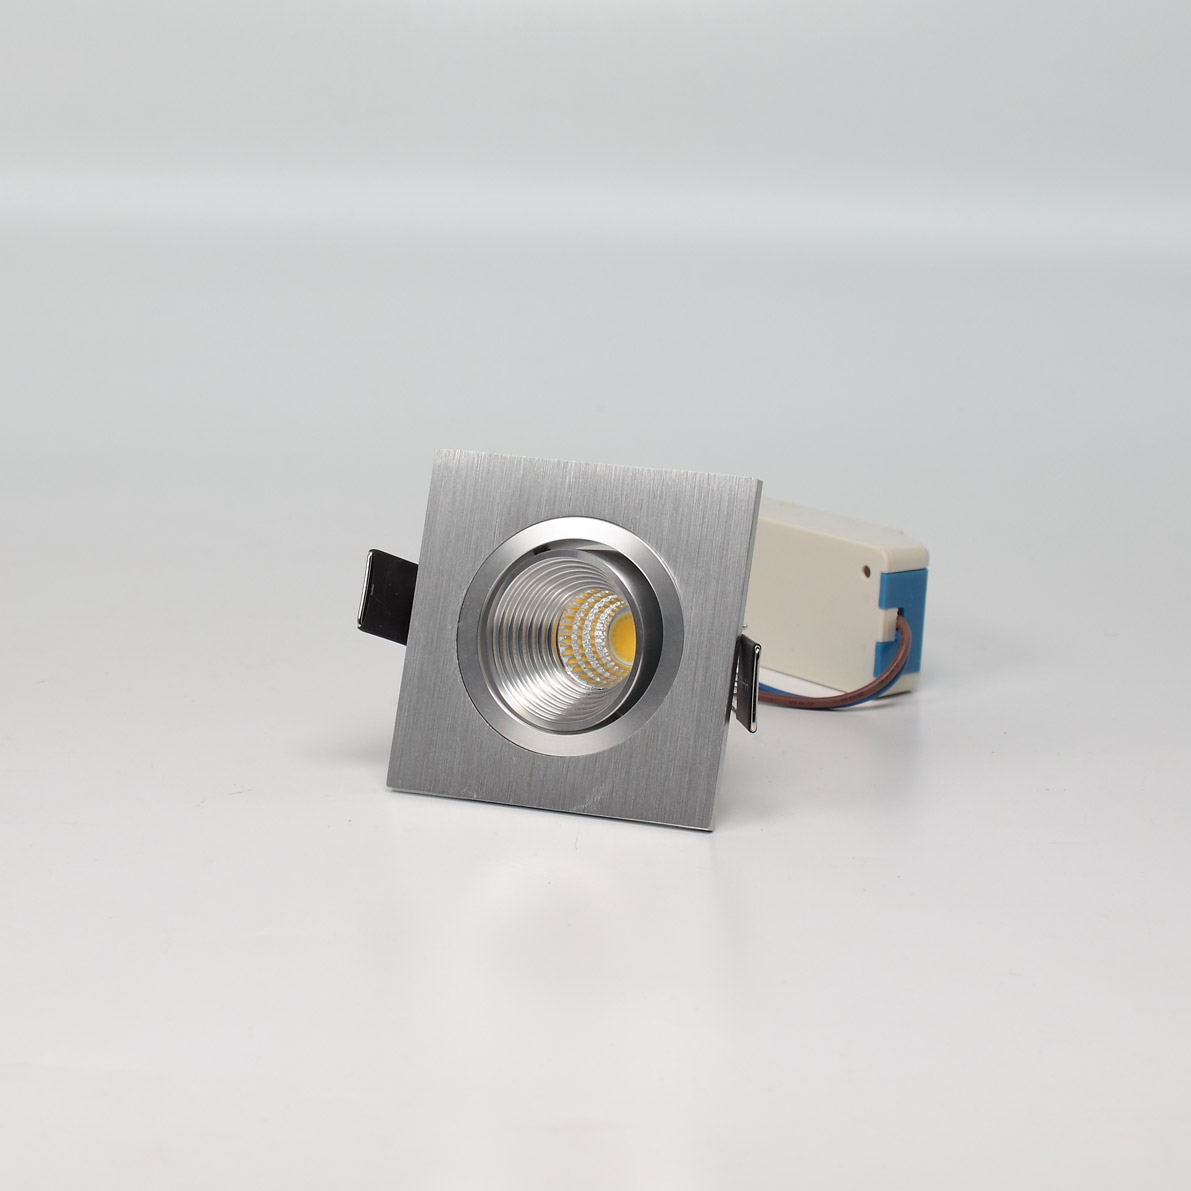 Светодиодные светильники Светодиодный светильник встраиваемый 65 Series silver housing BW301 (3W,220V,day white)